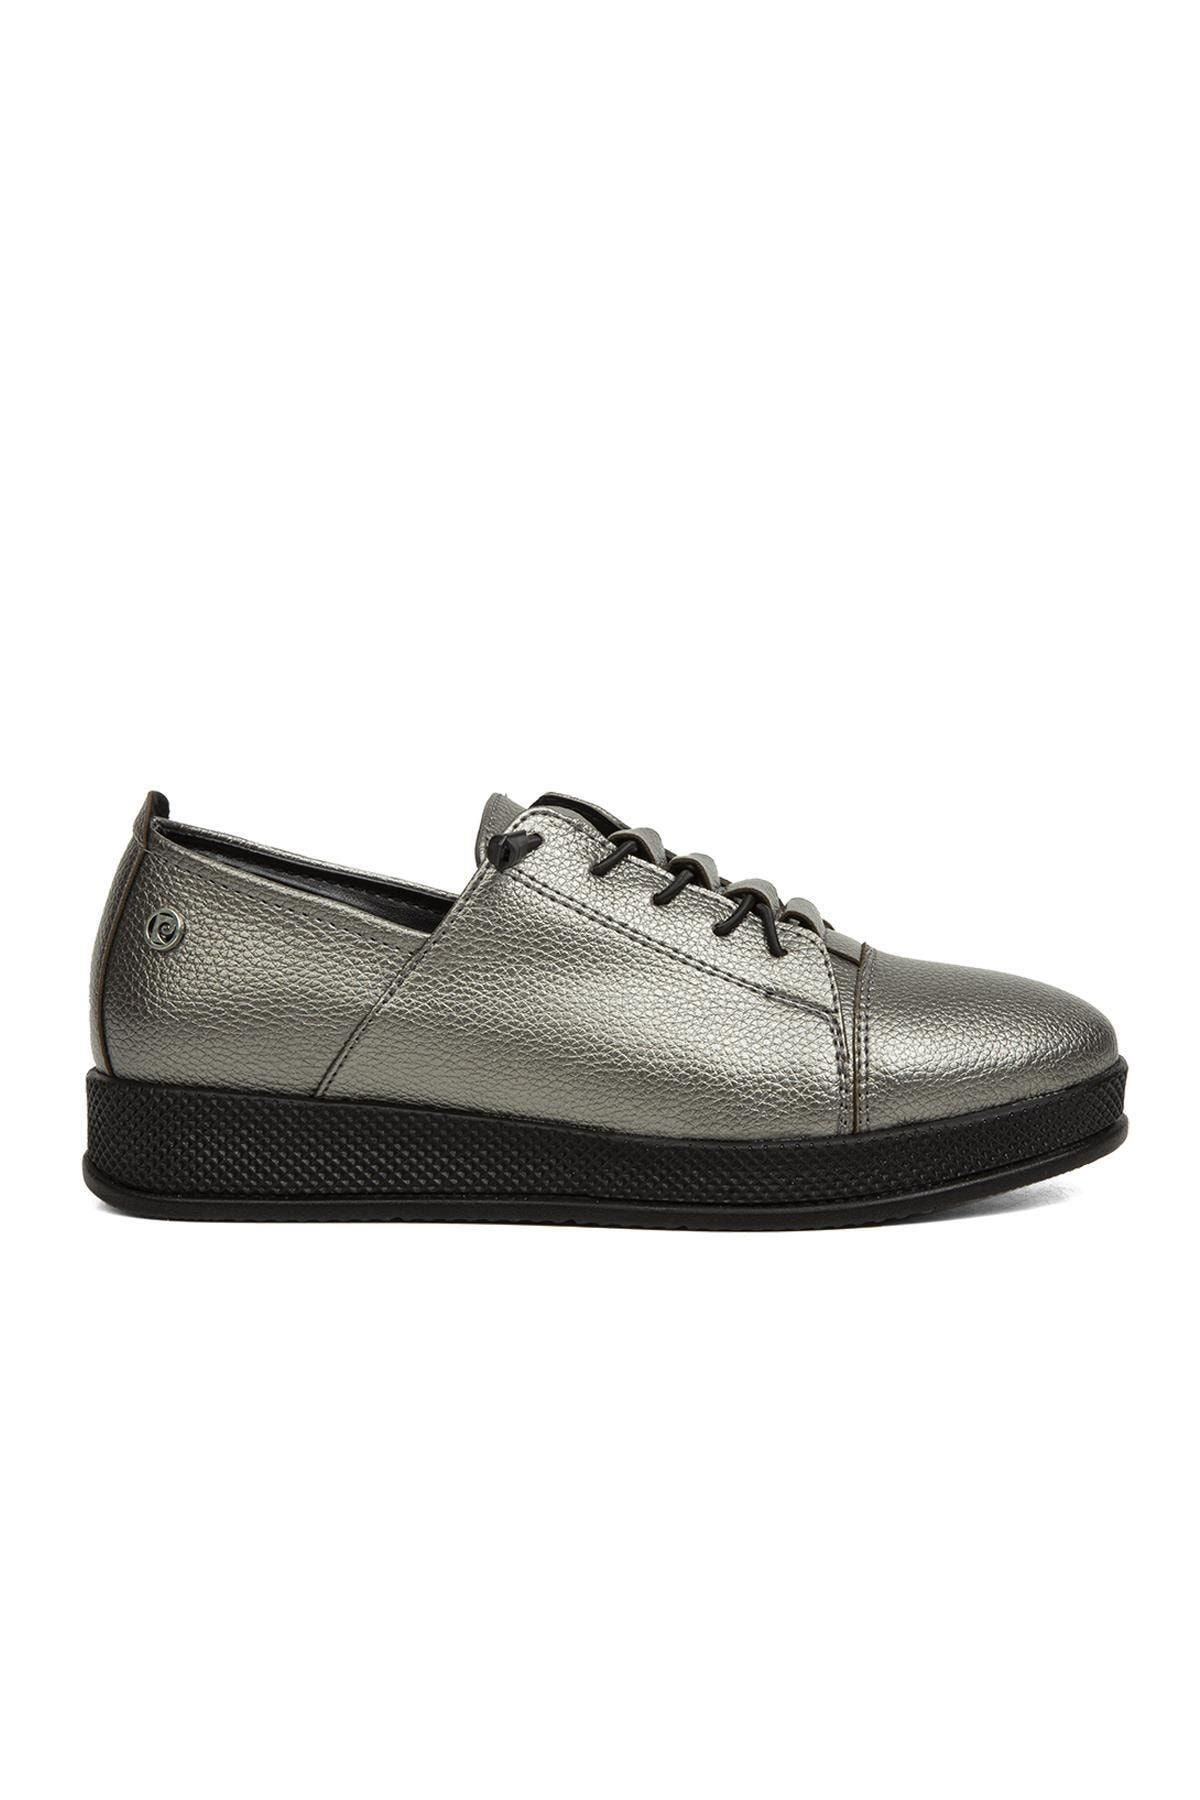 Pierre Cardin ® | Pc-52096-3076 Platin - Kadın Günlük Ayakkabı